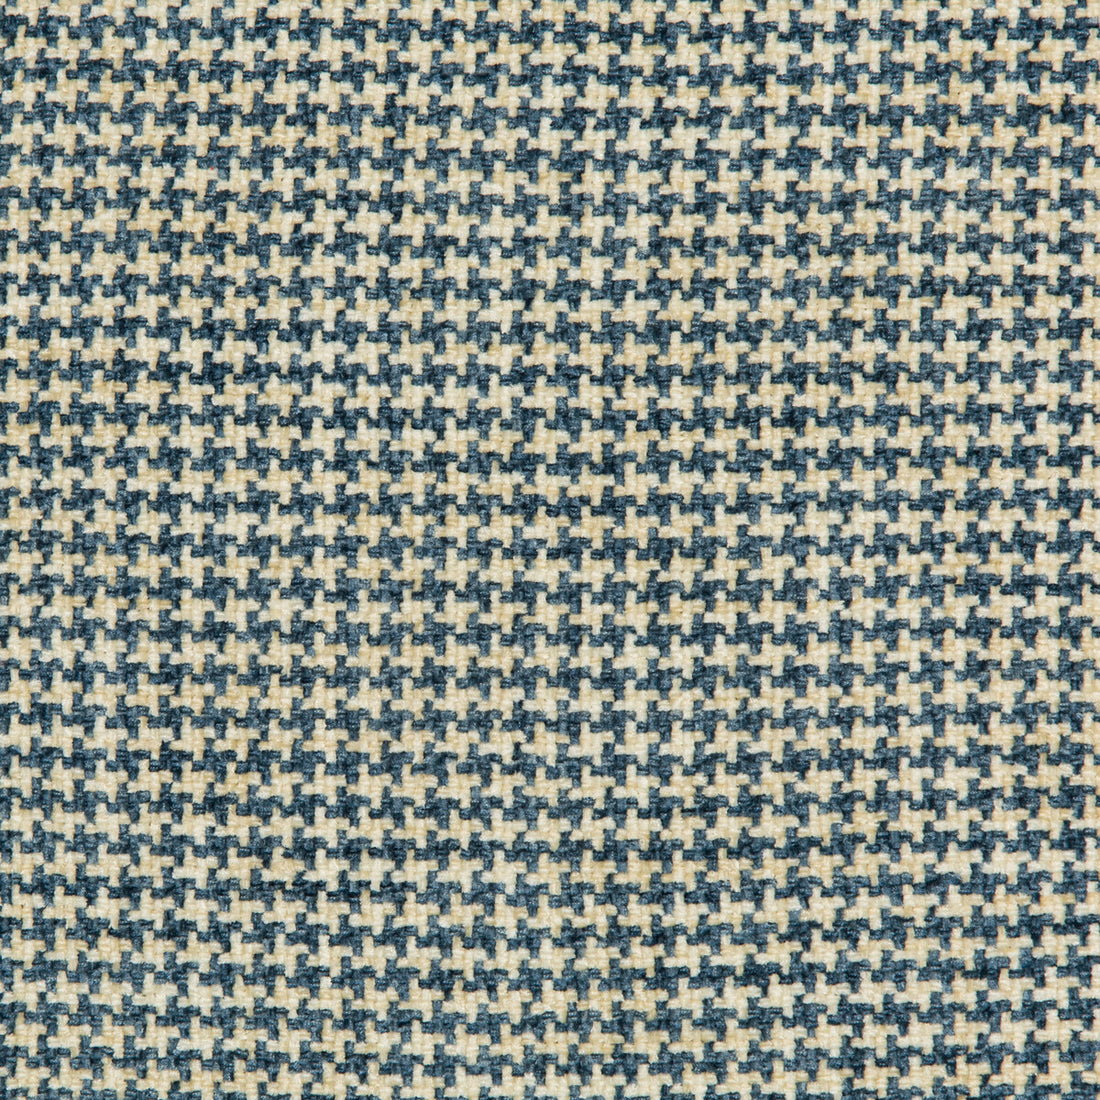 Kravet Basics fabric in 35778-51 color - pattern 35778.51.0 - by Kravet Basics